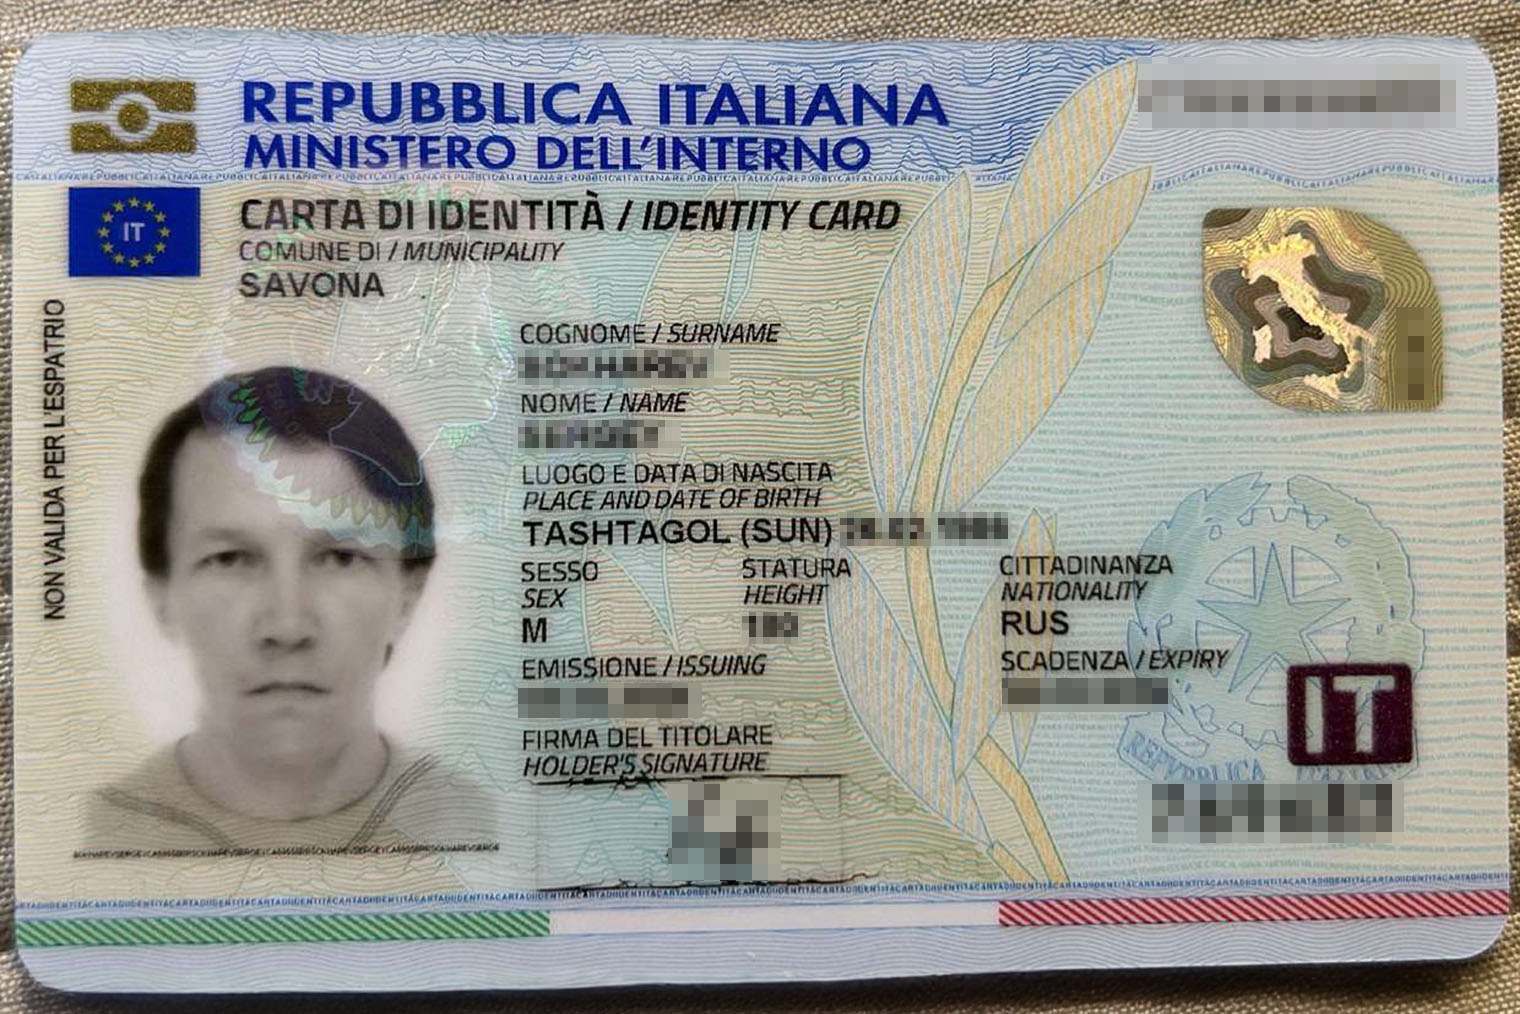 Так выглядит удостоверение личности в Италии. Называется carta d’identita